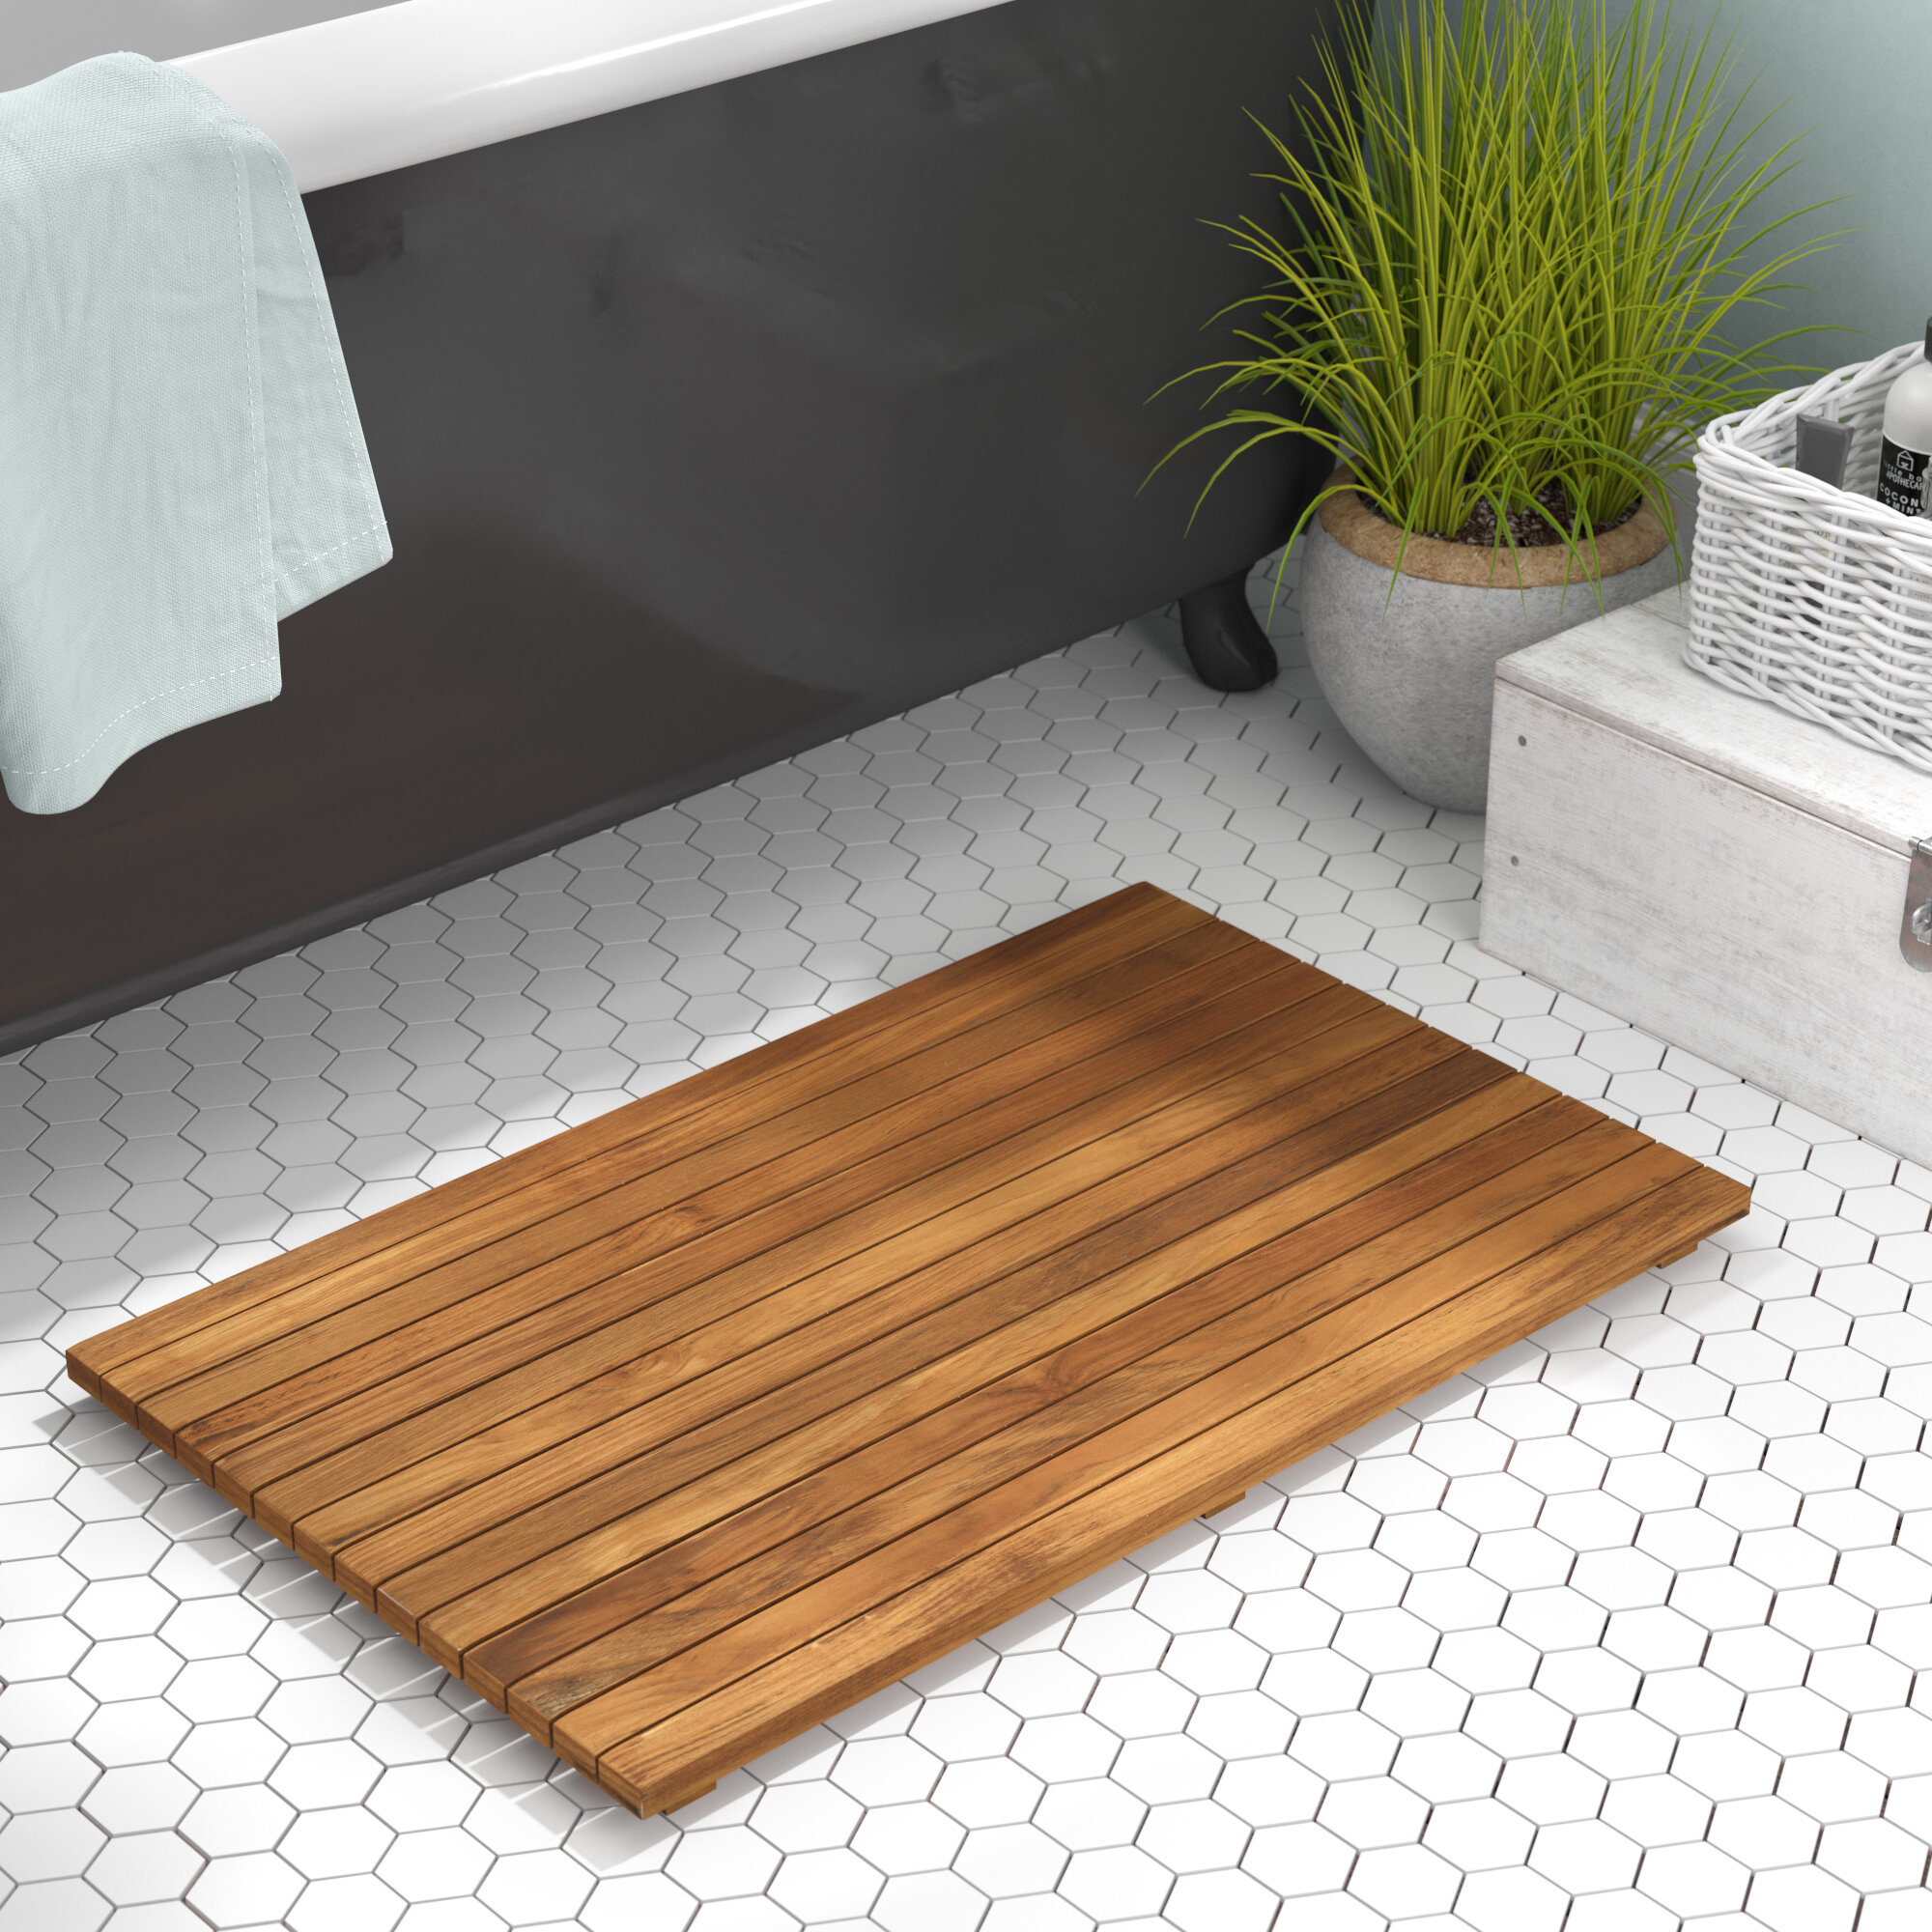 Tropical beach Kitchen Bath Bathroom Shower Floor Home Door Mat Rug Non-Slip new